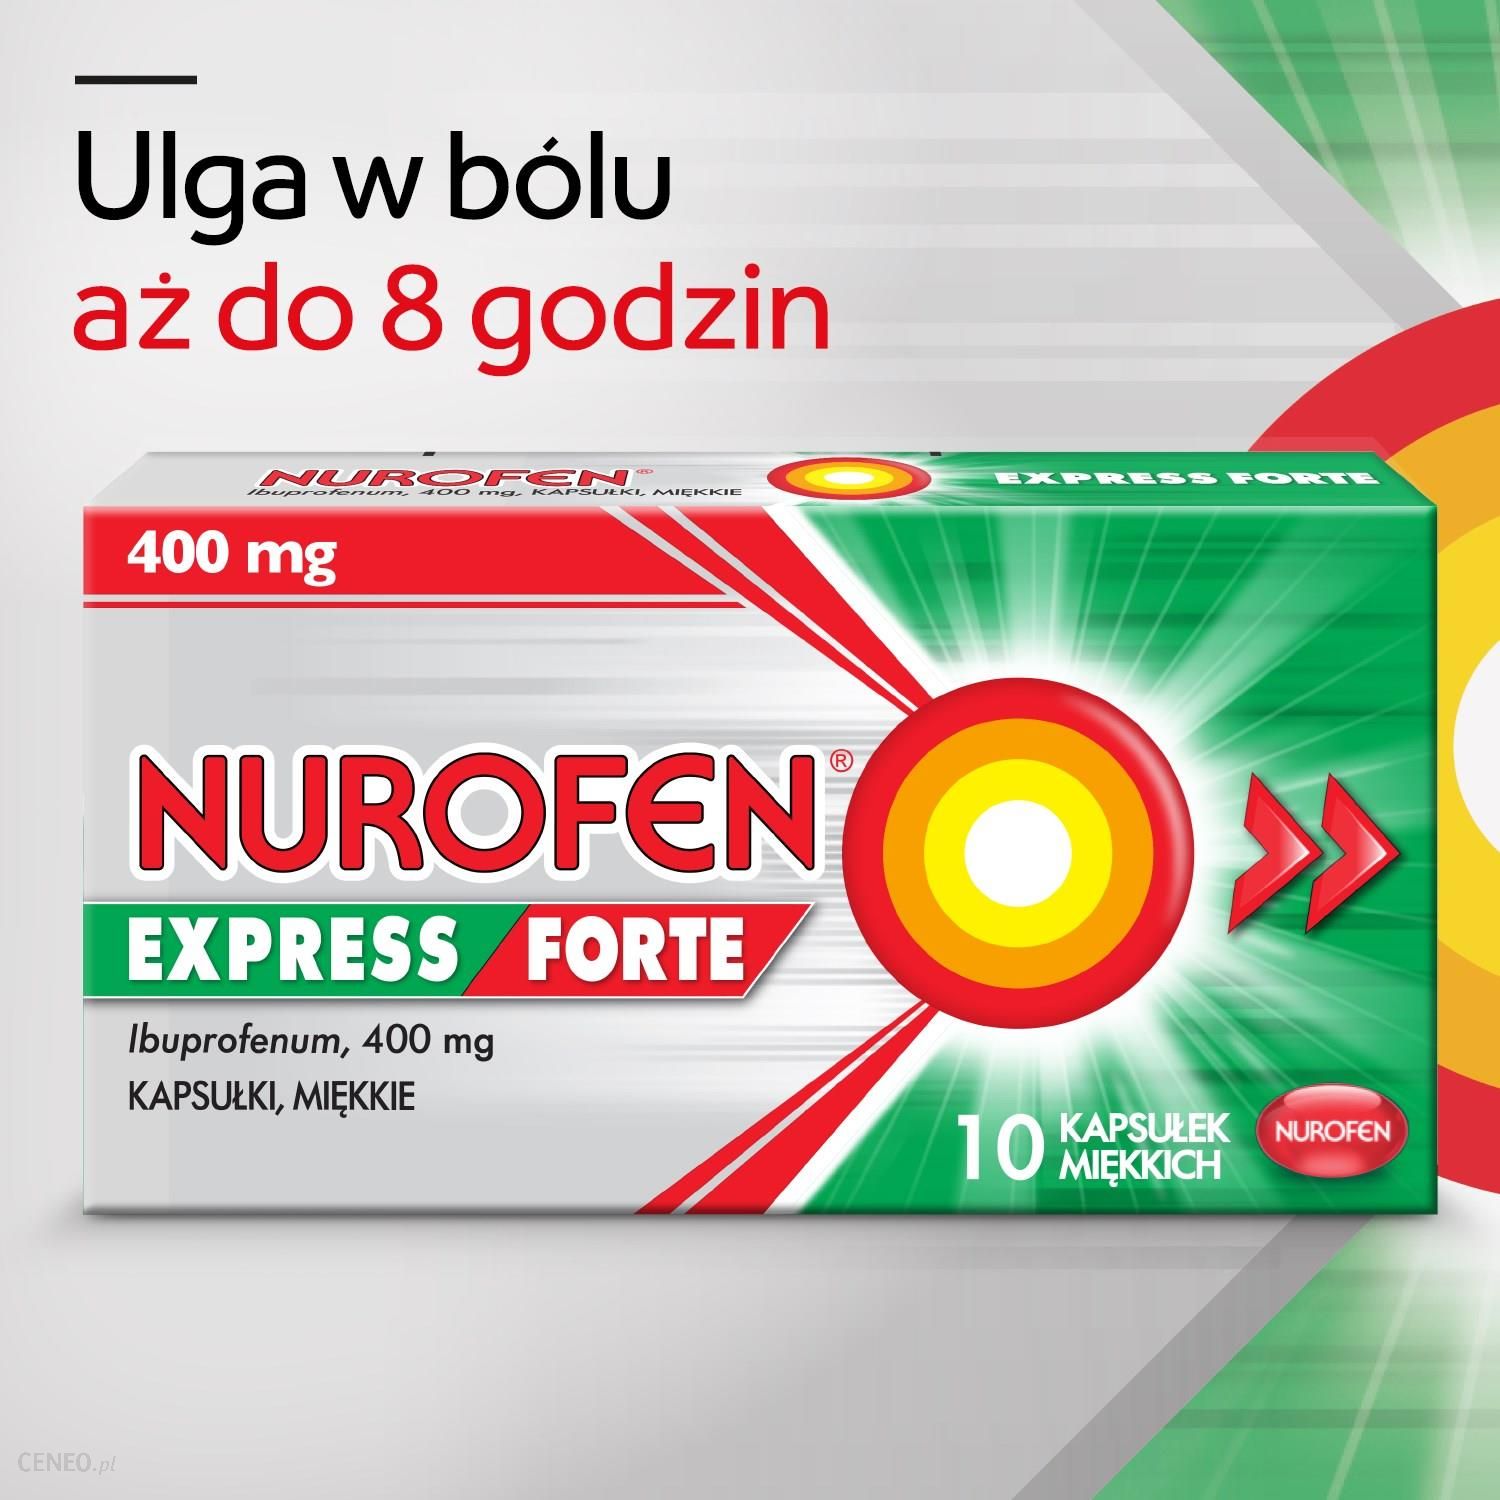 Нурофен форте 400 мг. Нурофен экспресс форте 400 мг. Нурофен экспресс форте 400мг 20. Нурофен экспресс форте 400 мг 30 шт.